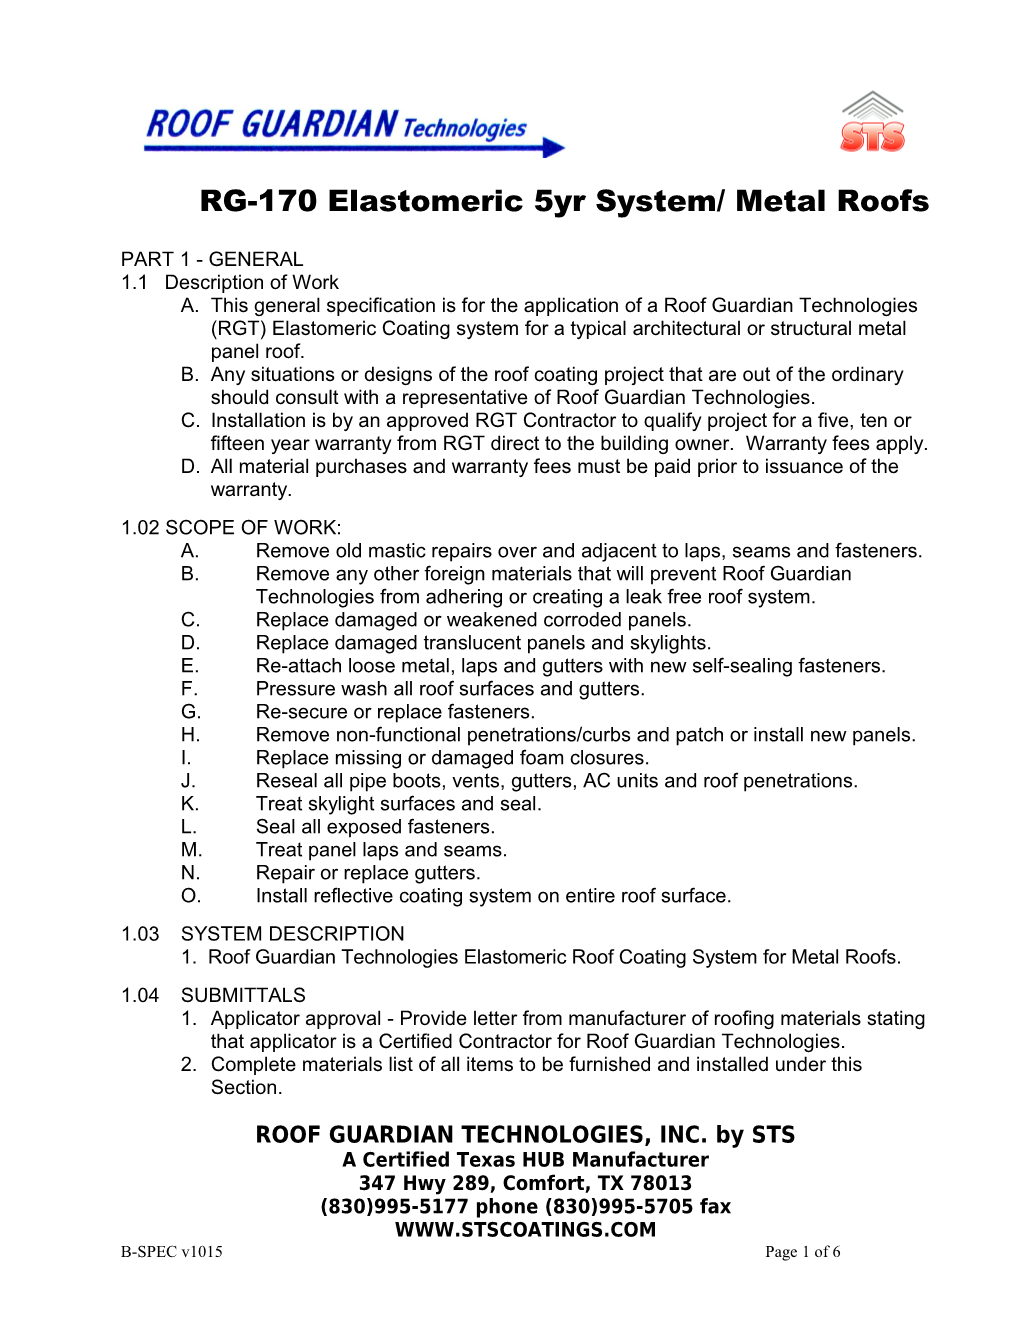 RG-170 Elastomeric 5Yr System/ Metal Roofs